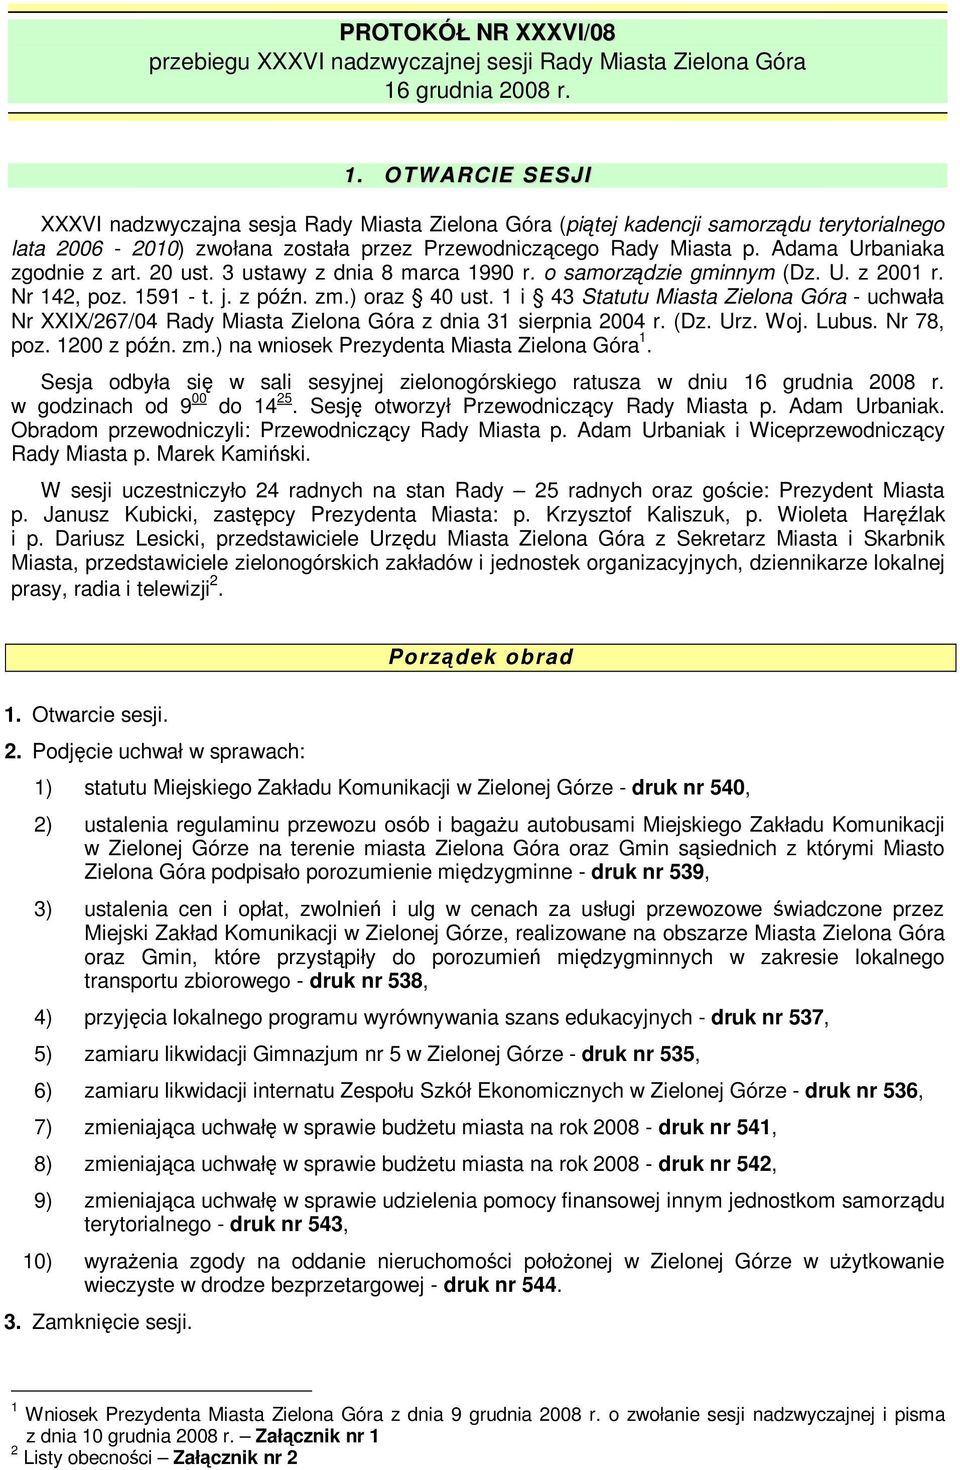 Adama Urbaniaka zgodnie z art. 20 ust. 3 ustawy z dnia 8 marca 1990 r. o samorzdzie gminnym (Dz. U. z 2001 r. Nr 142, poz. 1591 - t. j. z pón. zm.) oraz 40 ust.